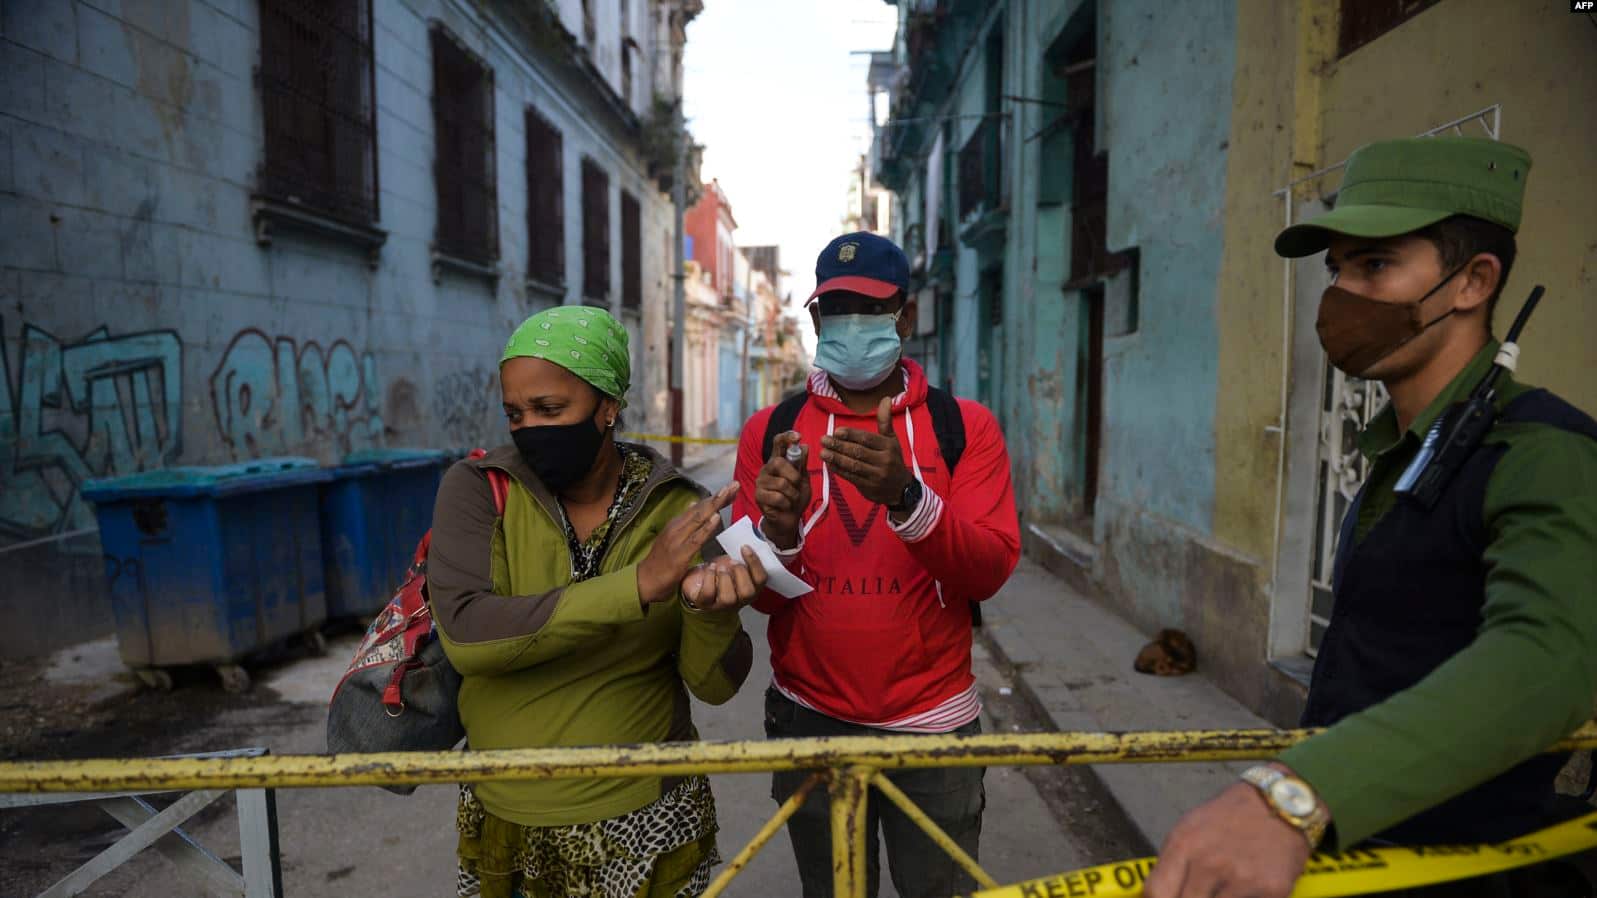 Sigue en aumento el numero de contagios diarios de COVID-19 en Cuba, que hoy amaneció con 967 nuevos casos positivos